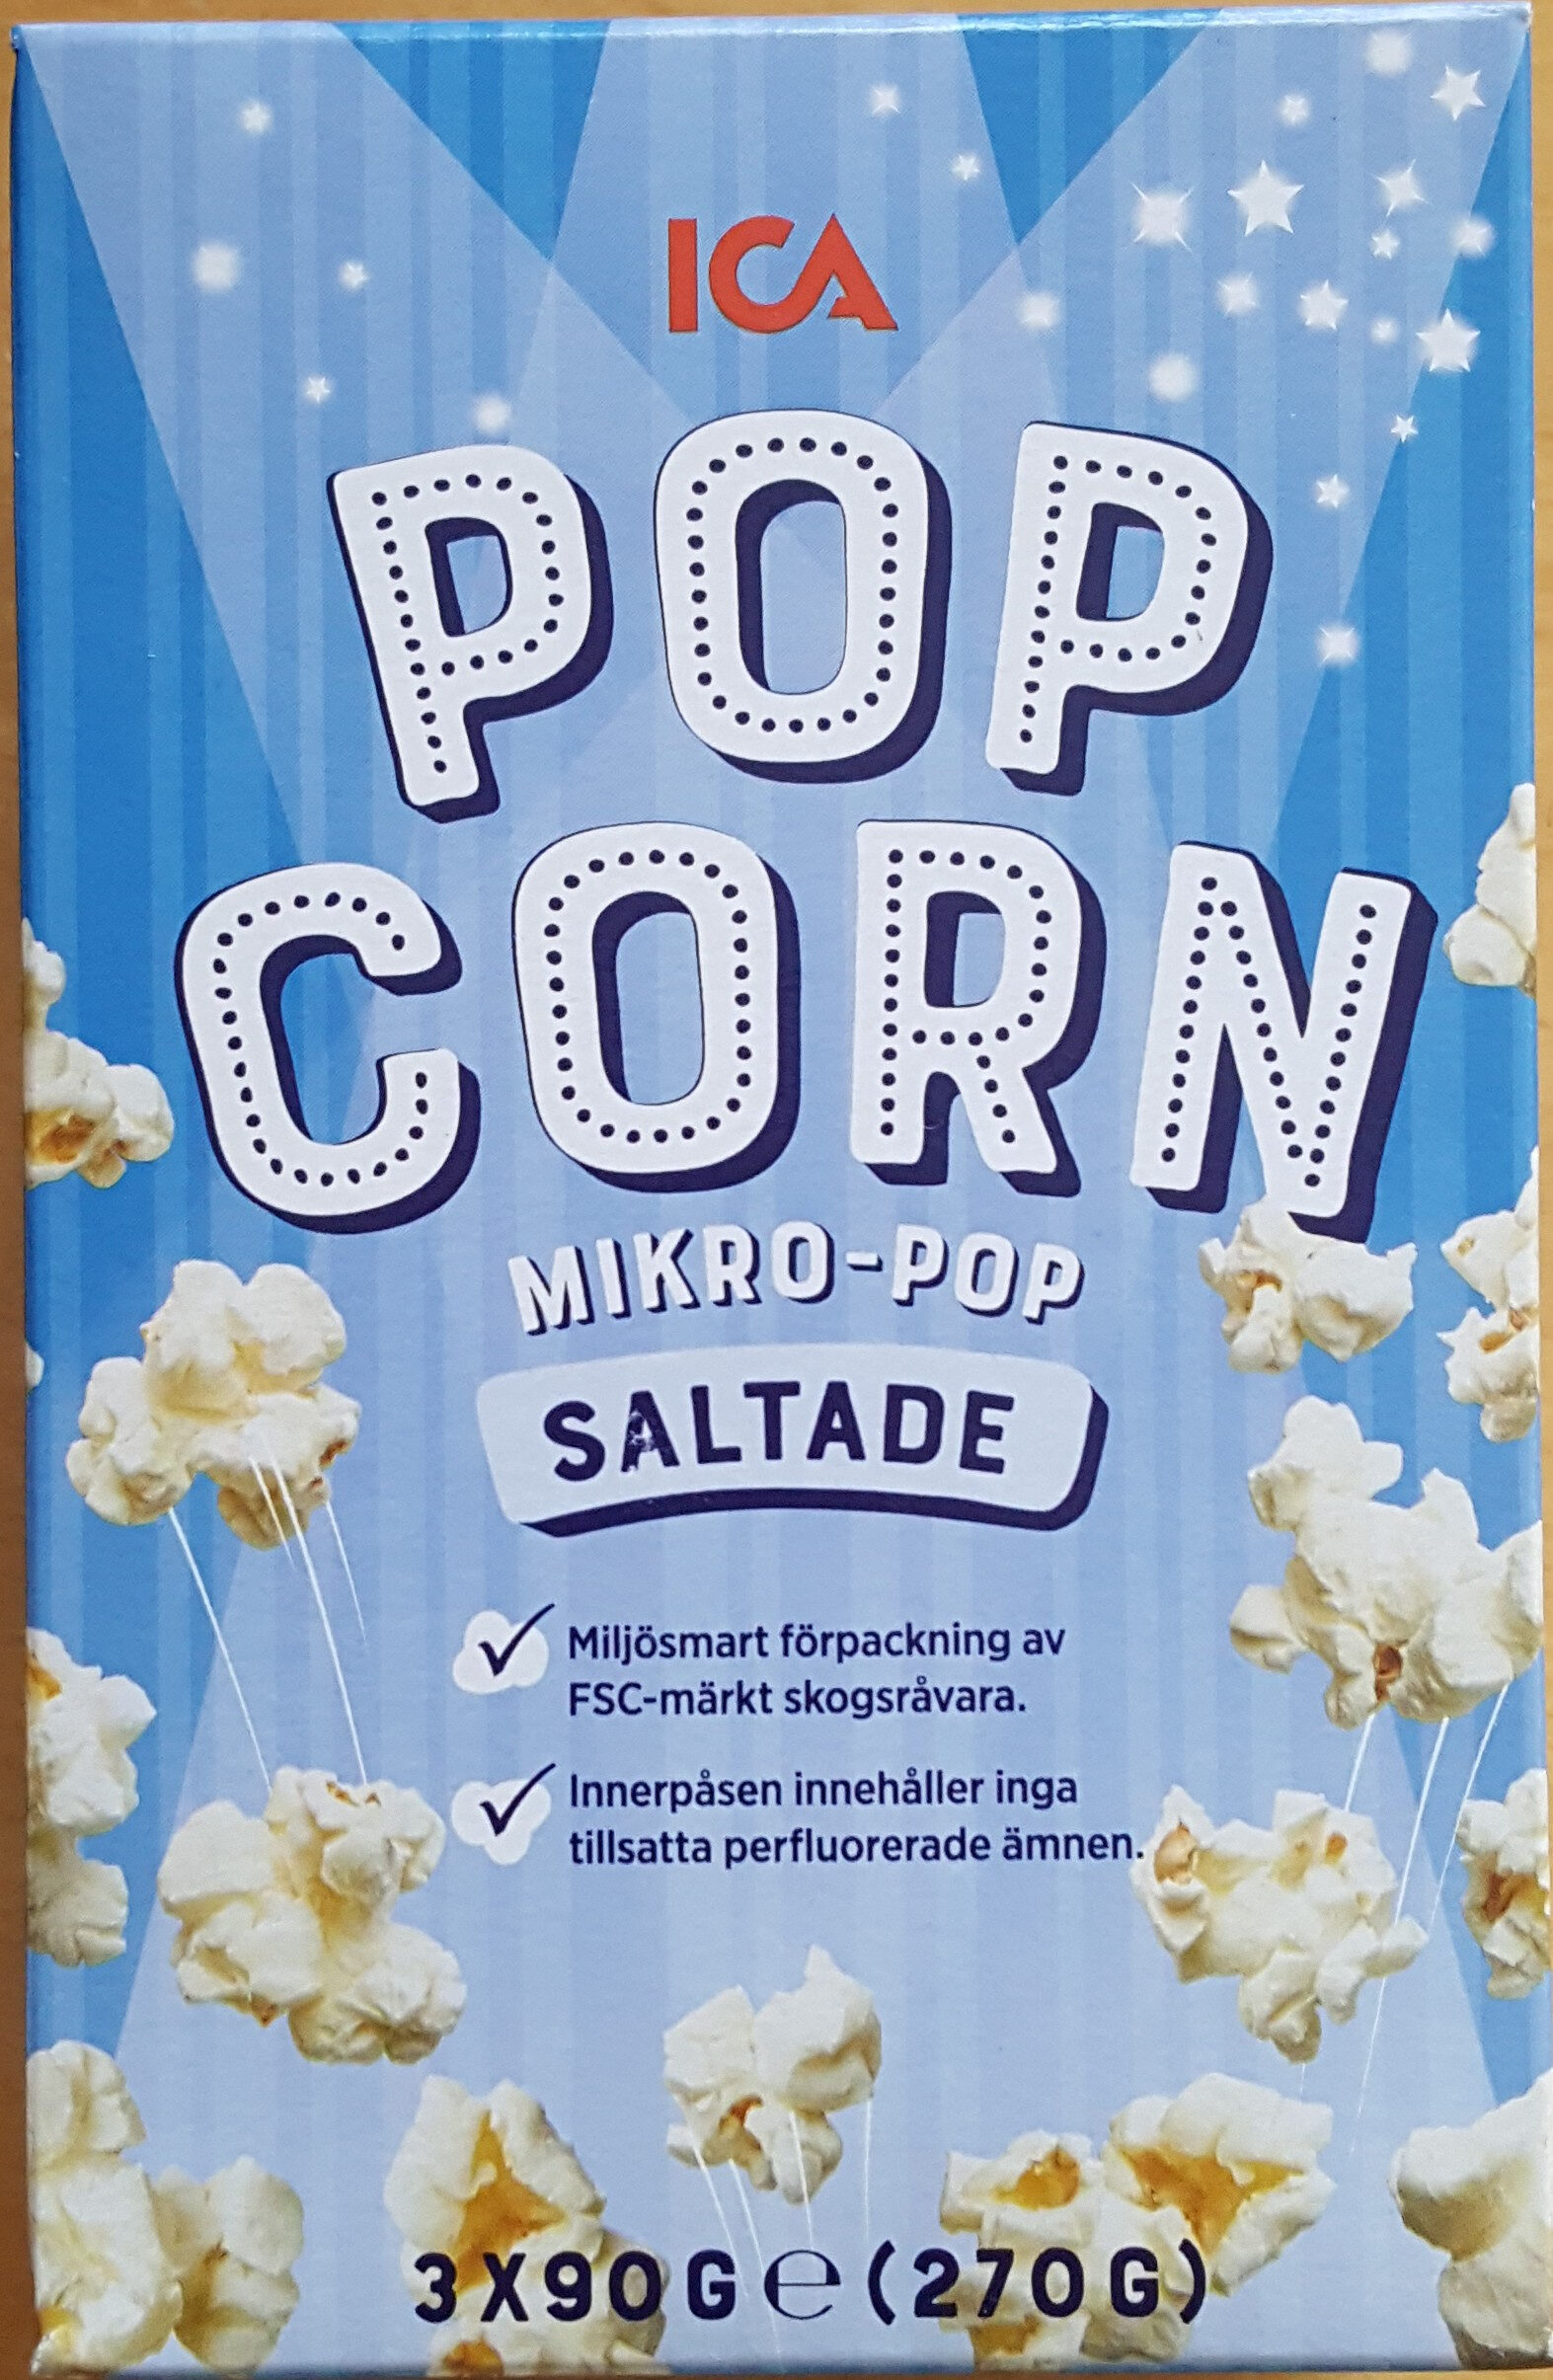 ICA Pop Corn Micropop Saltade - Produkt - sv